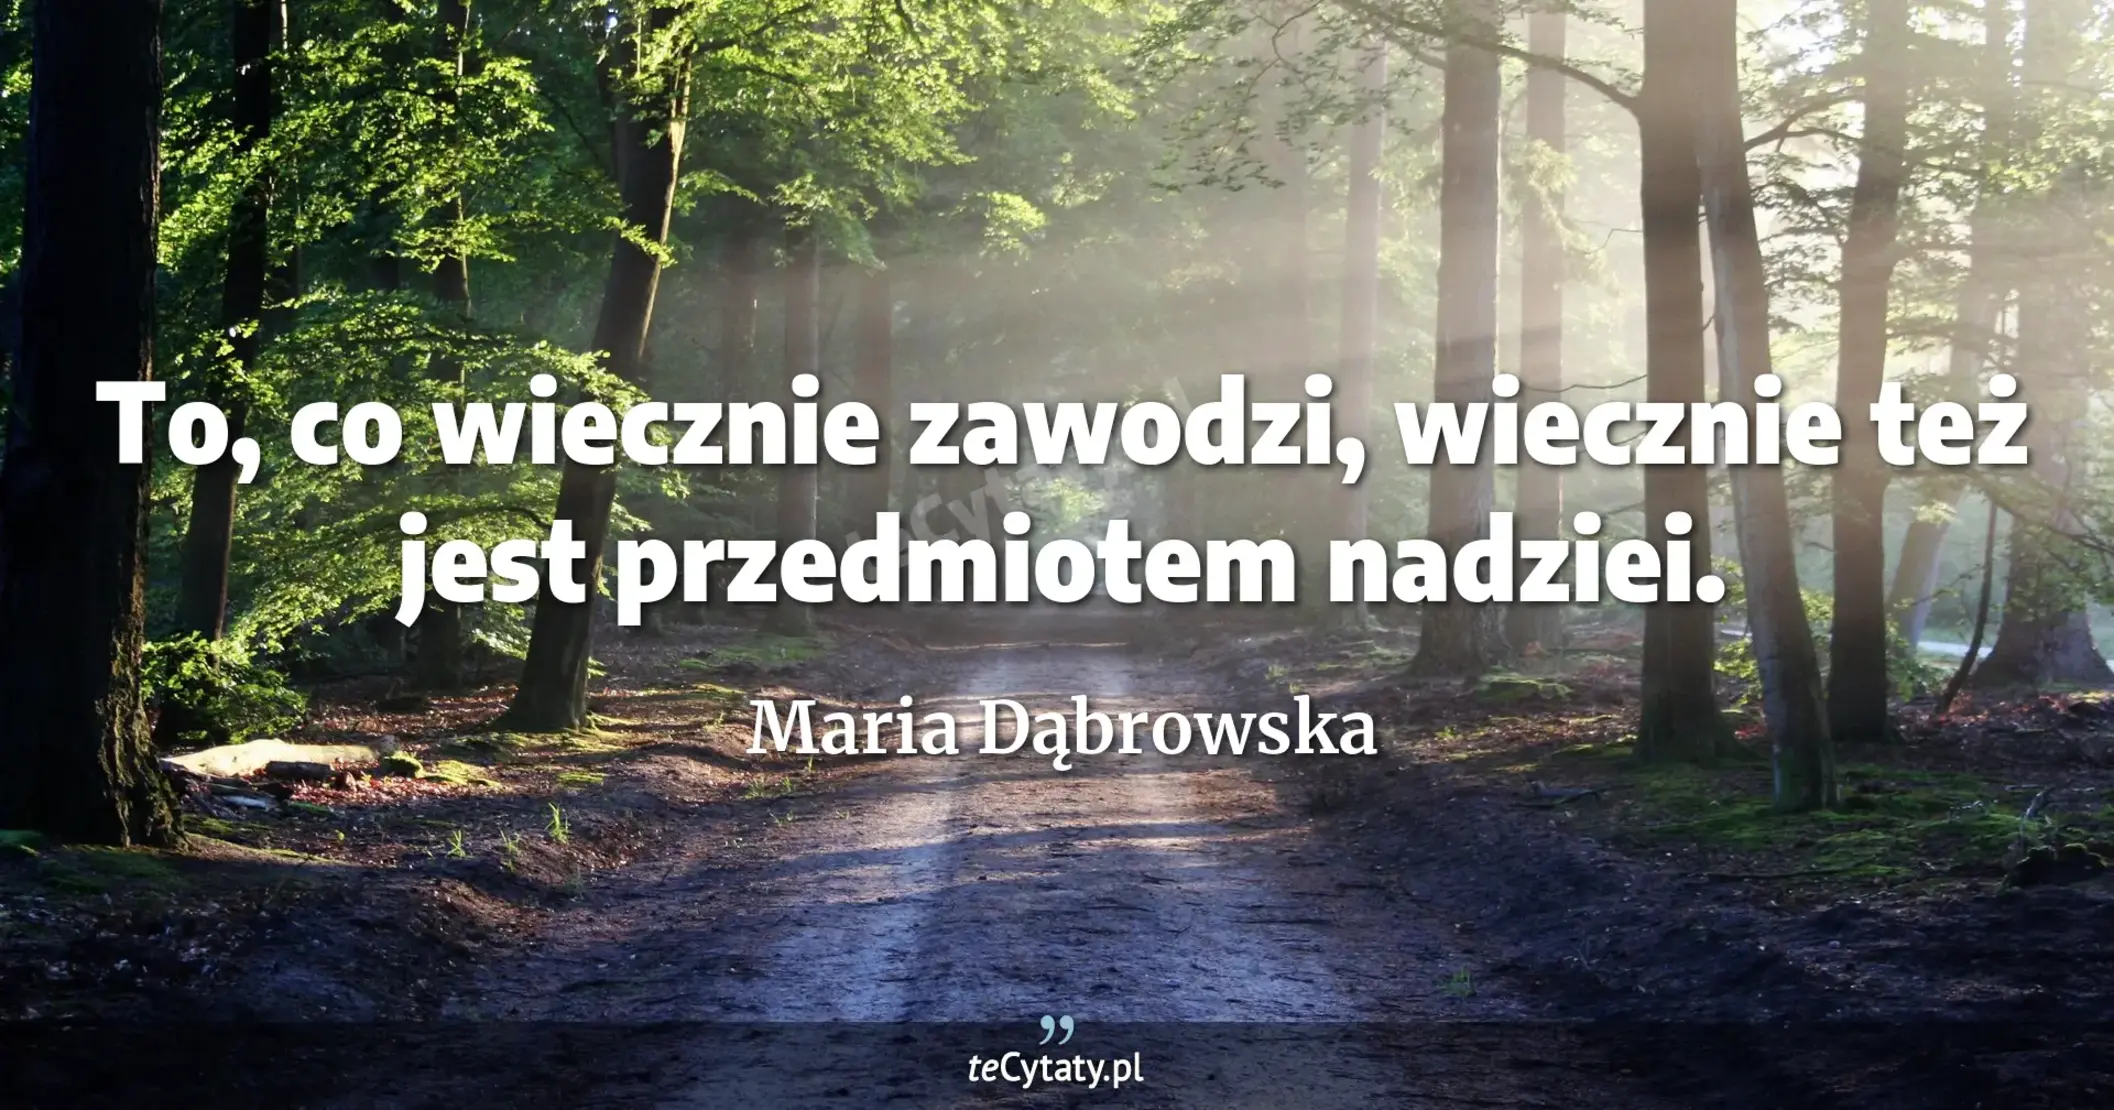 To, co wiecznie zawodzi, wiecznie też jest przedmiotem nadziei. - Maria Dąbrowska